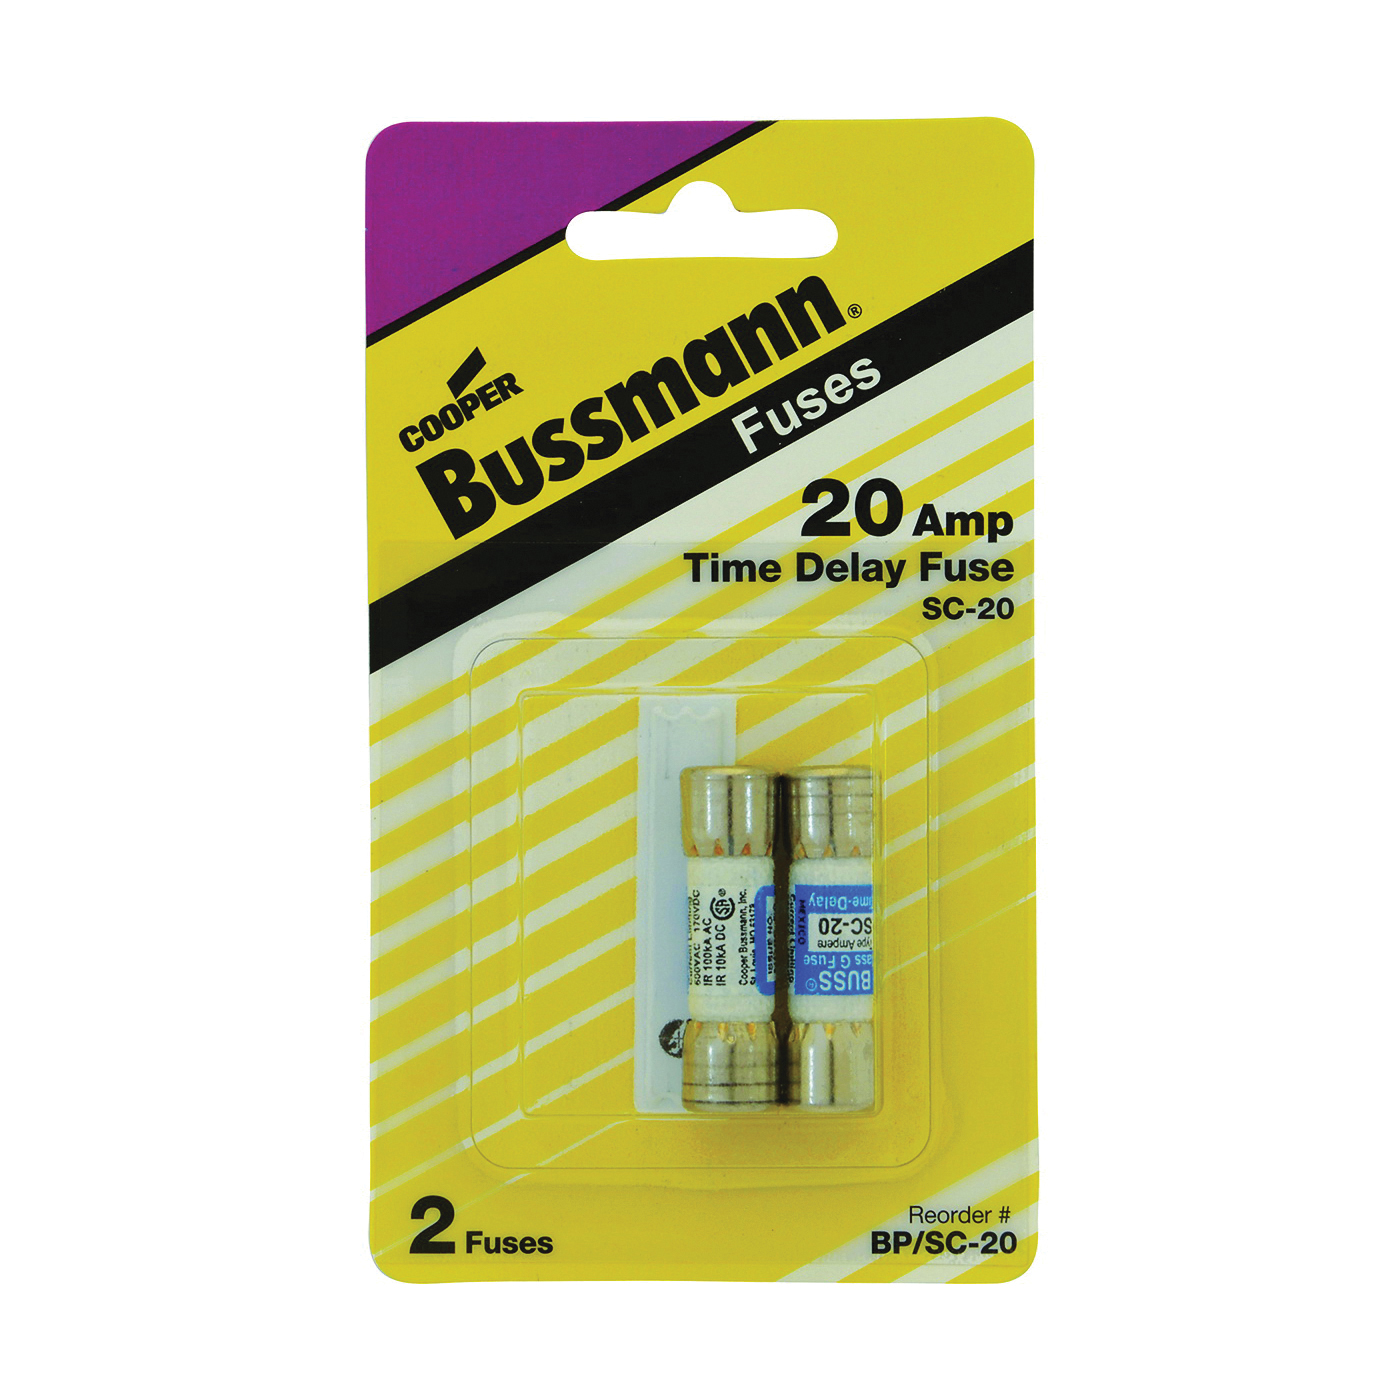 Bussmann BP/SC-20